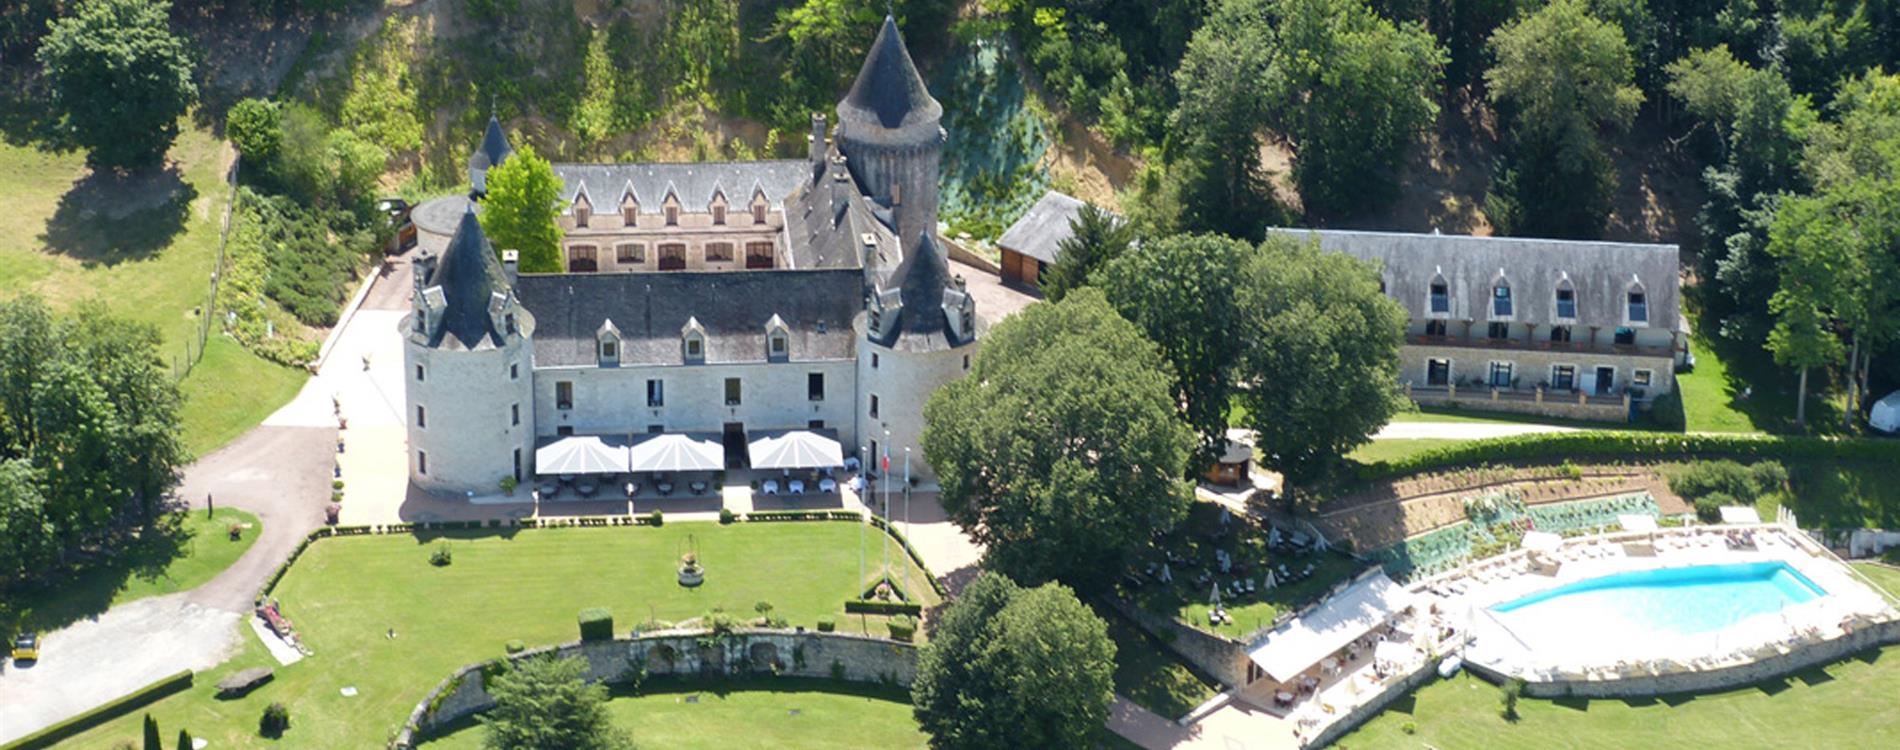 Résultat de recherche d'images pour "chateau hotel la fleunie"